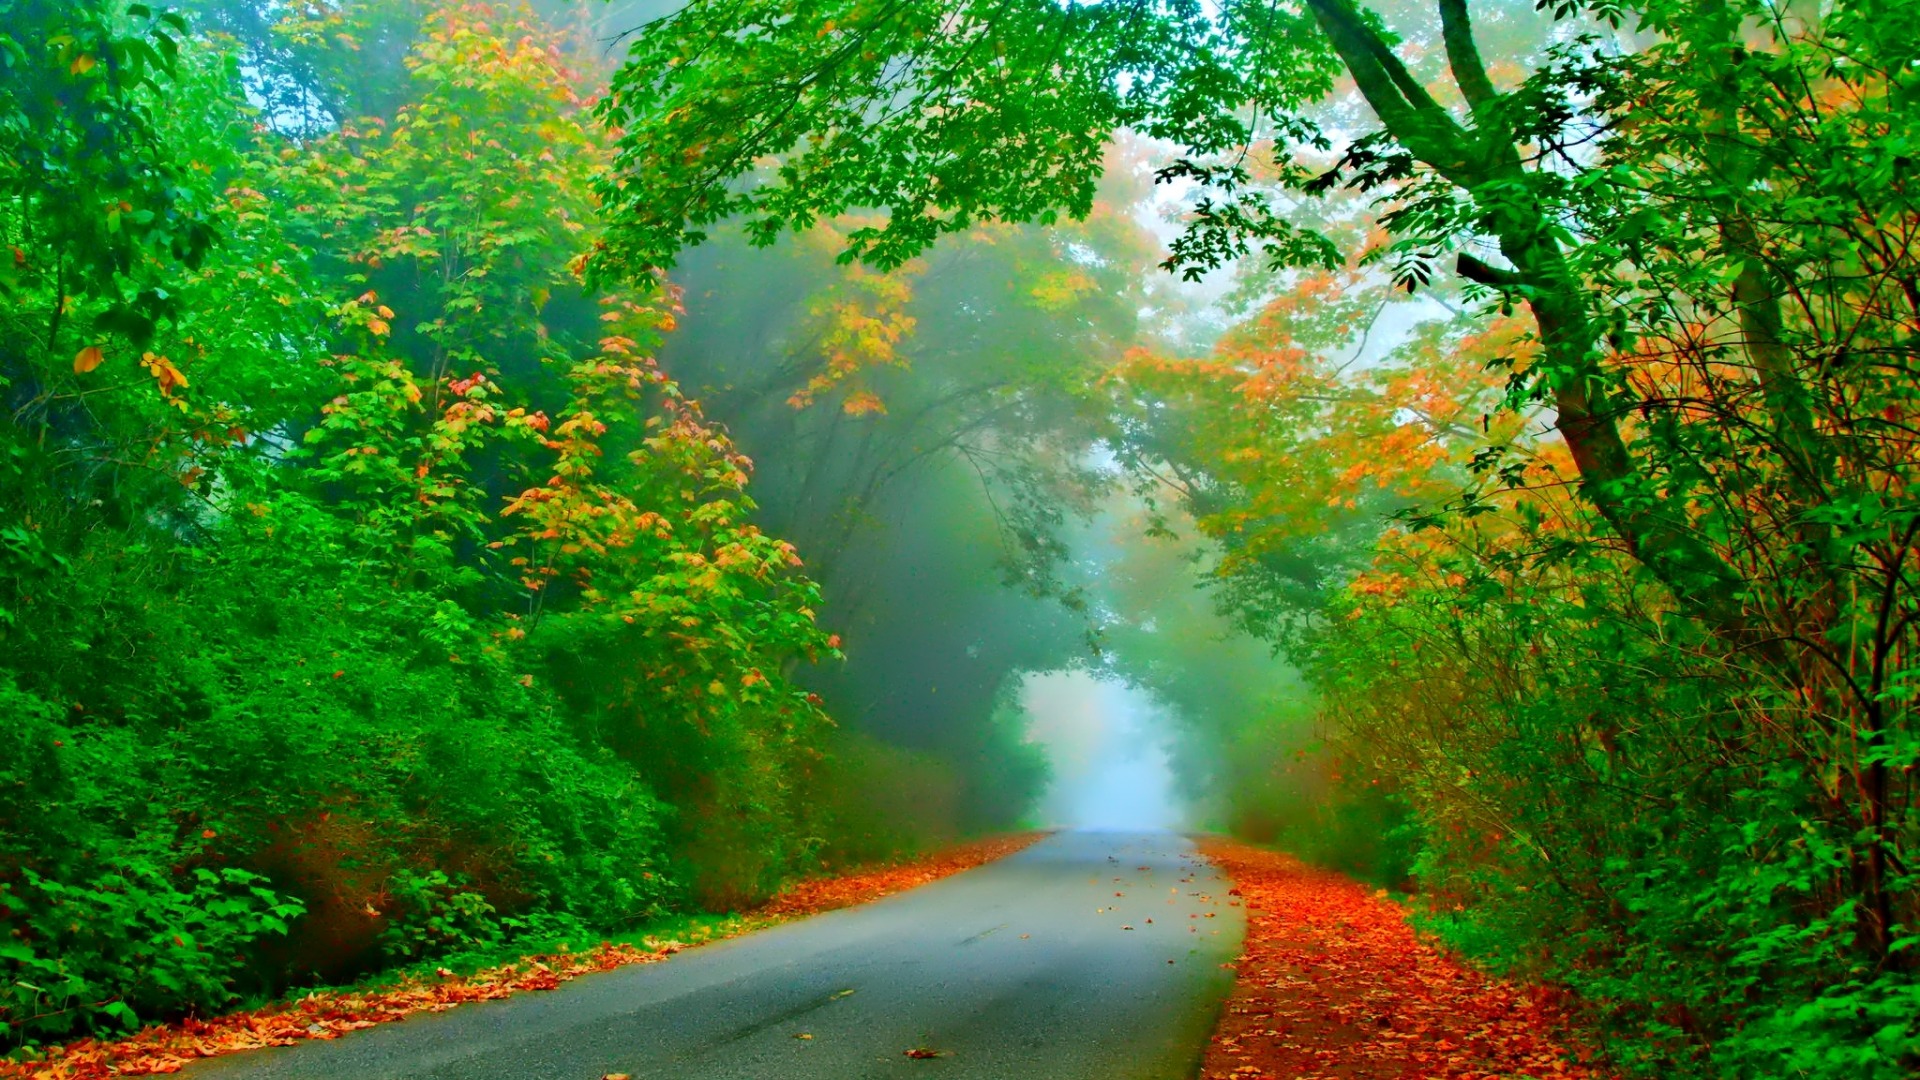 树木，树叶，道路，雾，美丽自然风景桌面壁纸